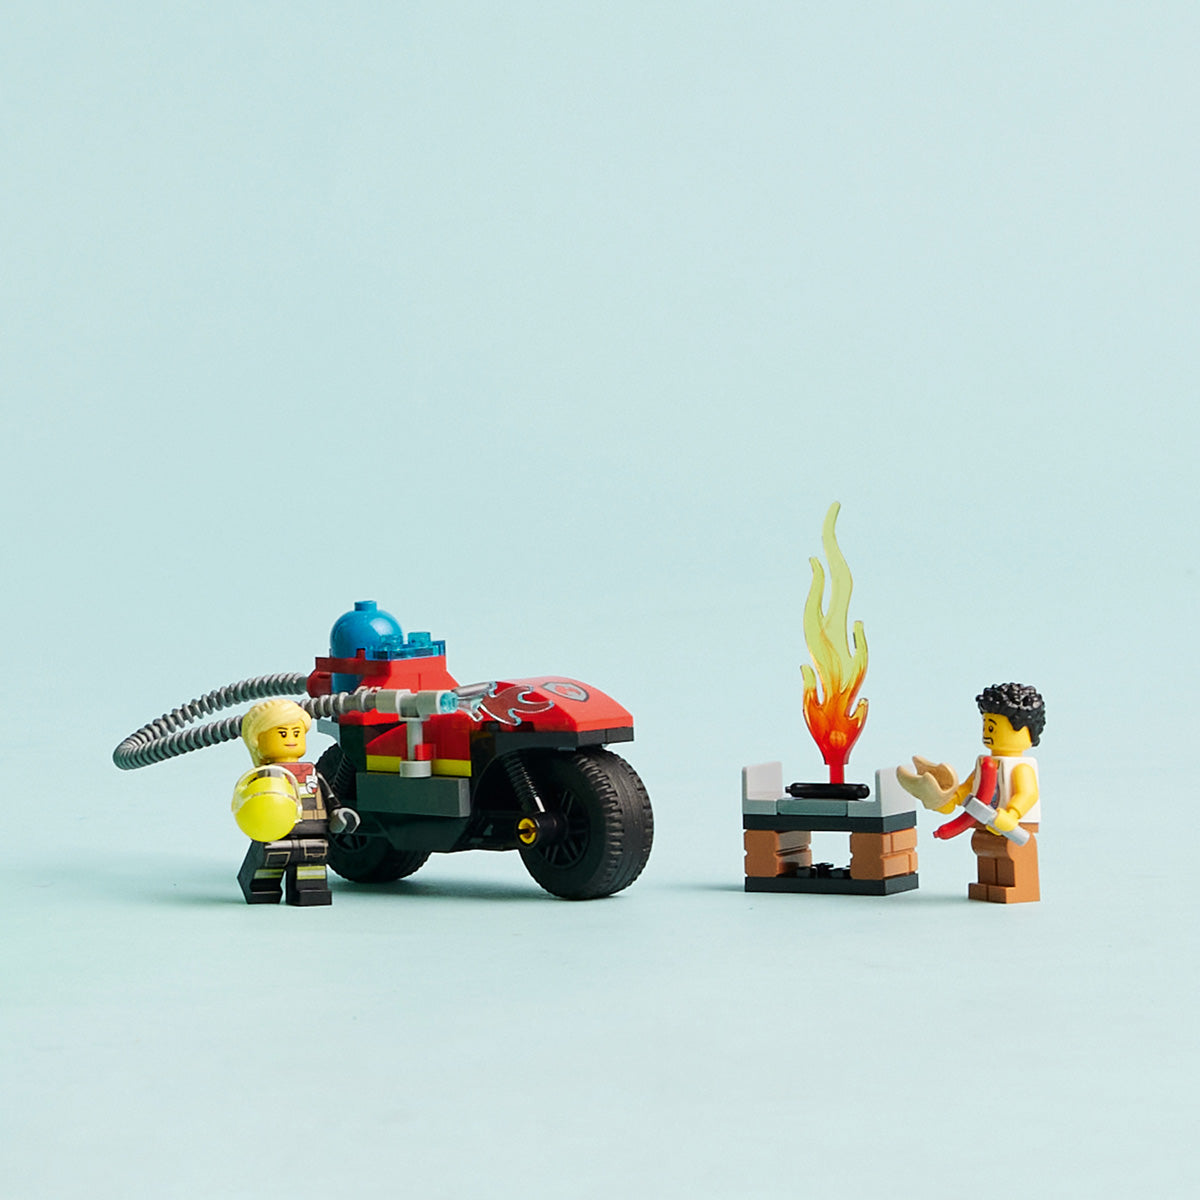 LEGO® City - Motor za reševanje iz požarov (60410)